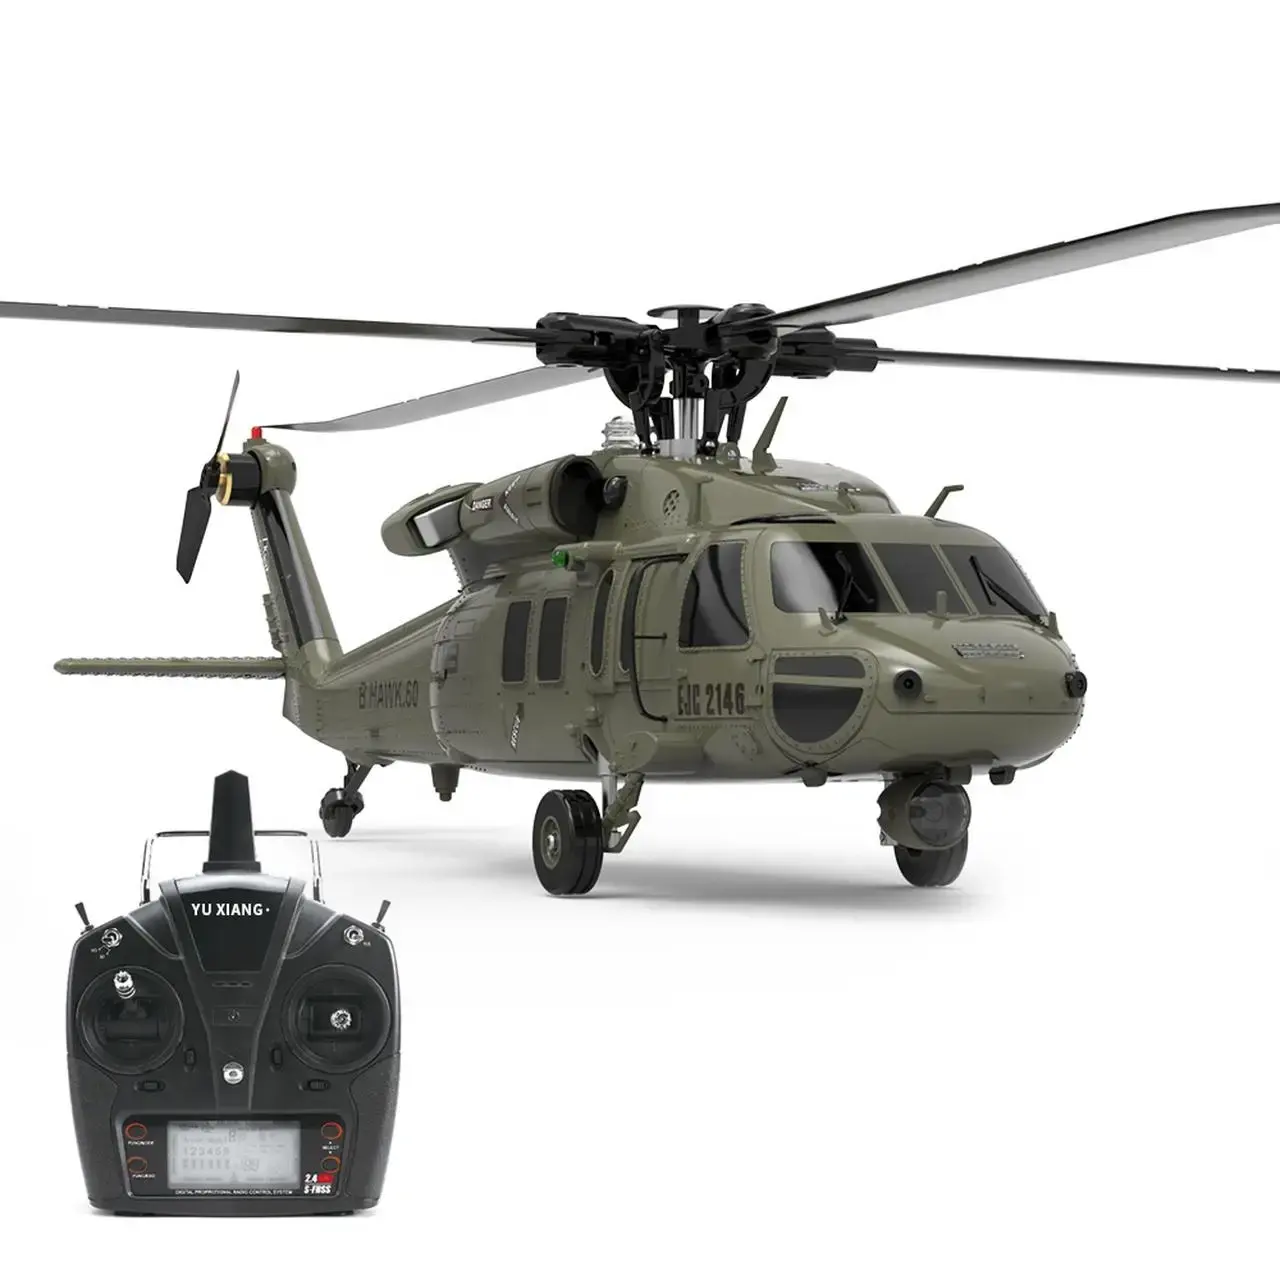 Rc Avion Réel Simulation F09 UH60 Black Hawk Flybarless RC Hélicoptère 6 CH 1/47 Échelle pour Passe-Temps Personnel Jouets version autonome